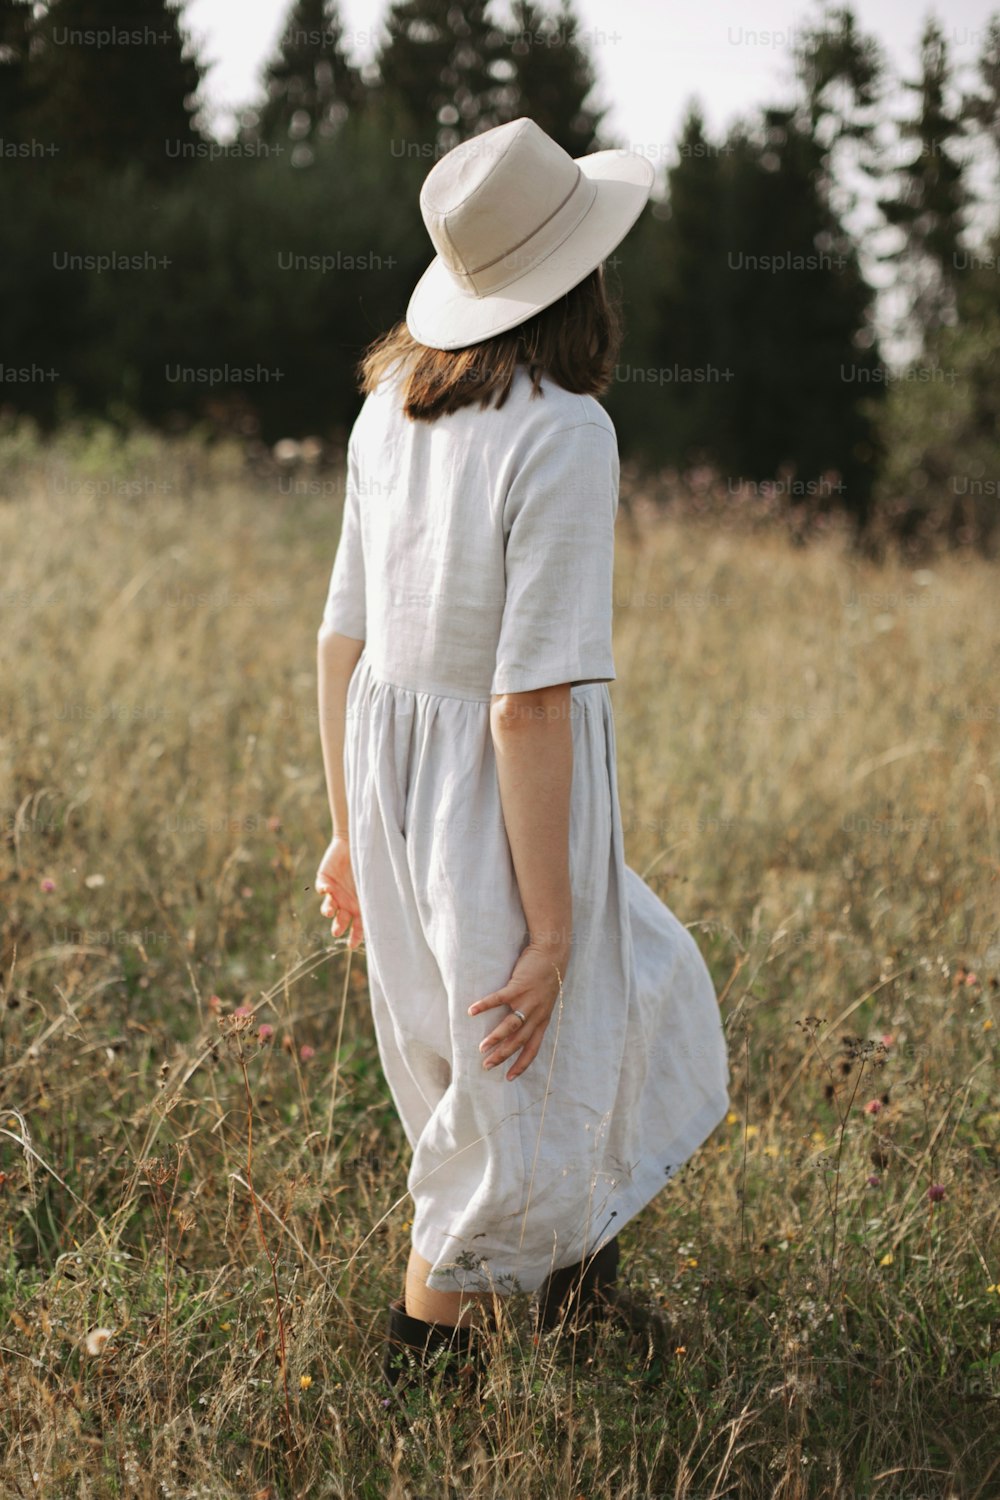 Menina elegante no vestido de linho e chapéu andando entre ervas e flores silvestres, olhando para o campo. Mulher Boho relaxando no campo, estilo de vida lento simples.  Imagem atmosférica